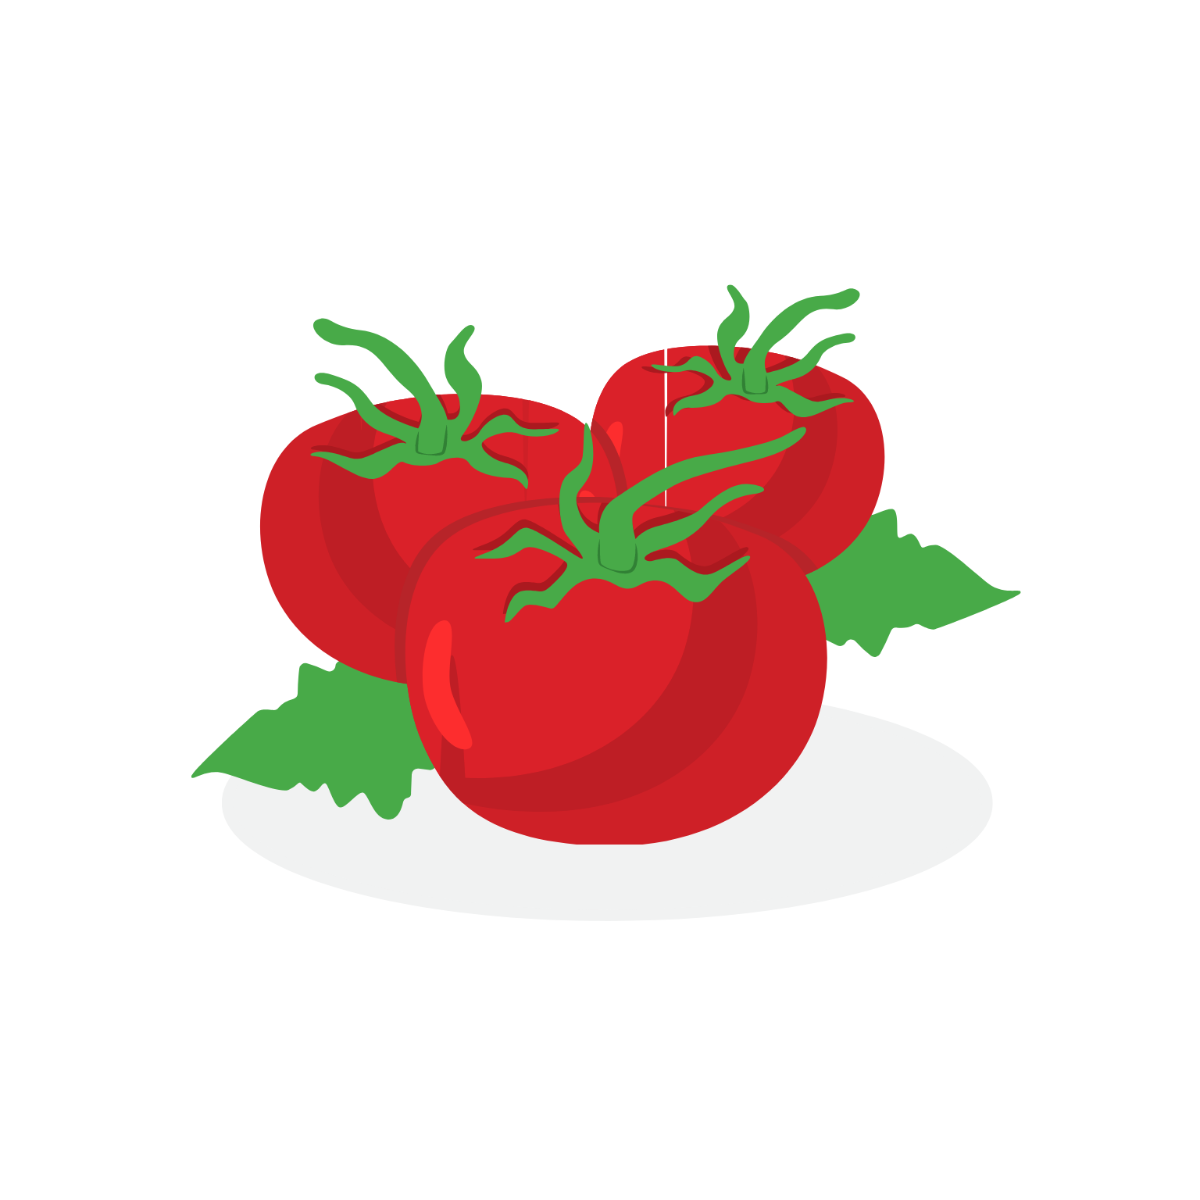 Tomato Vector Template